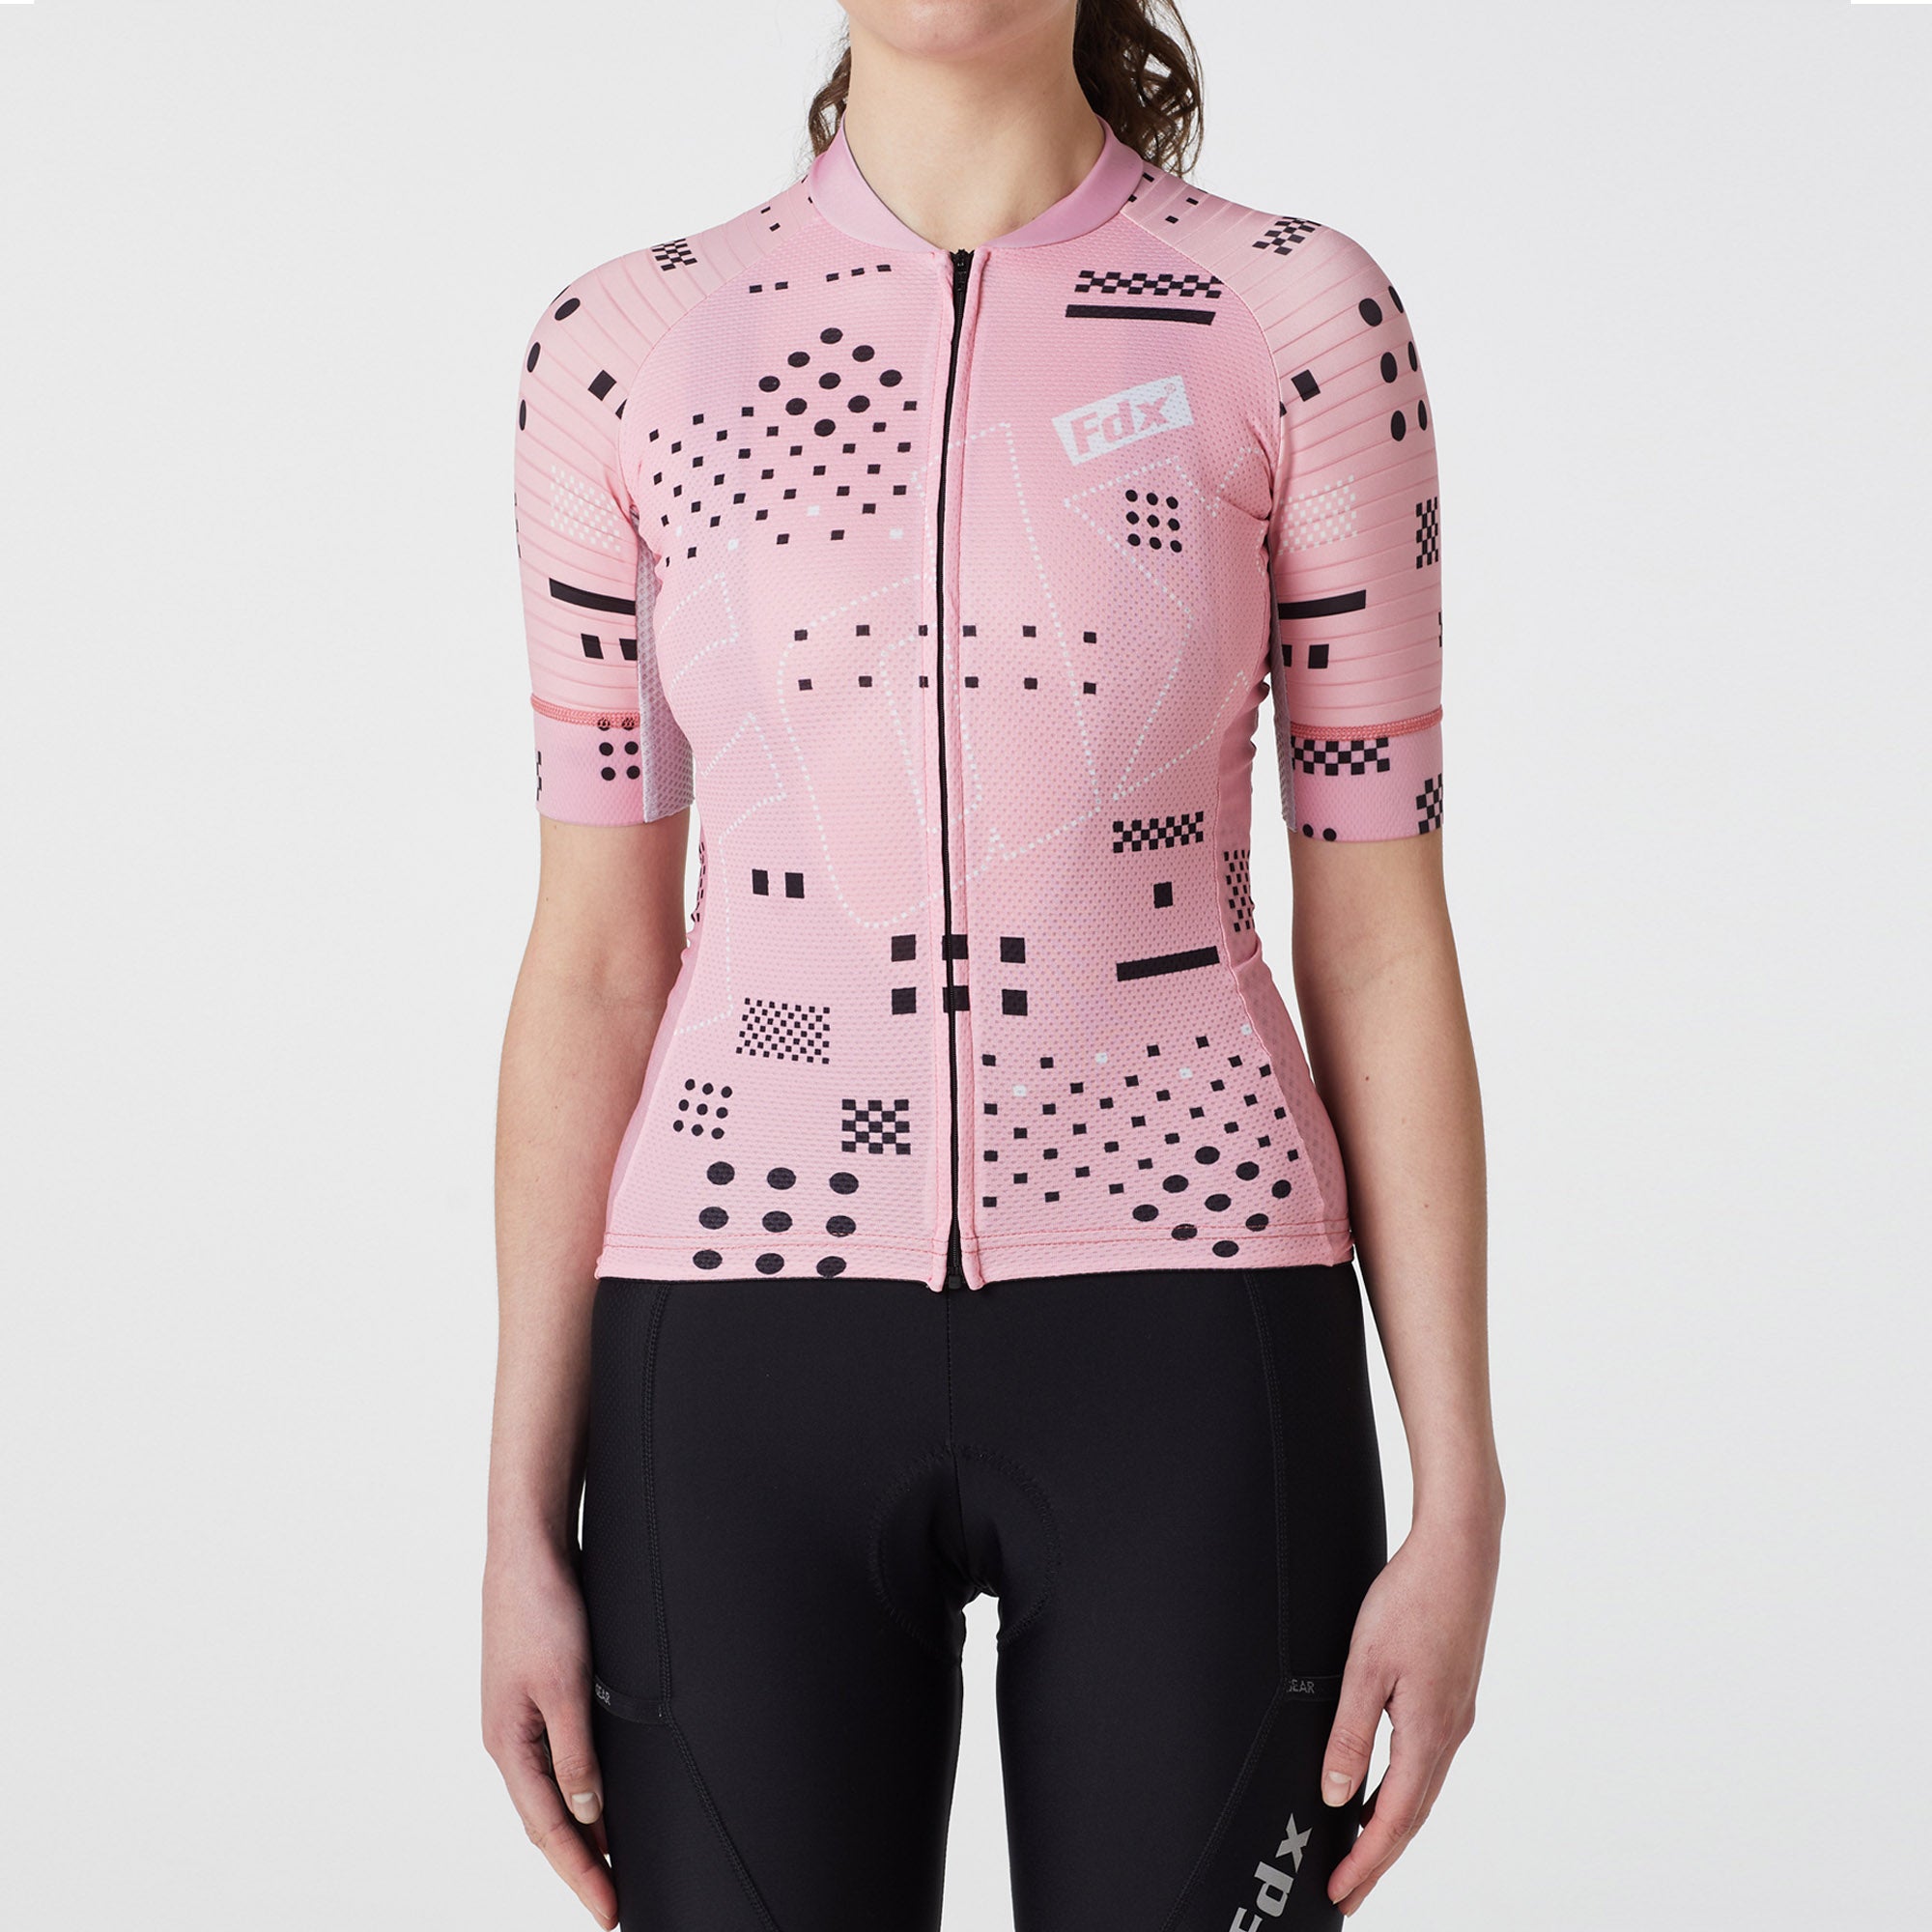 Fdx Womens Tea Pink Short Sleeve Cycling Jersey for Summer Best Road Bike Wear Top Light Weight, Full Zipper, Pockets & Hi-viz Reflectors - All Day